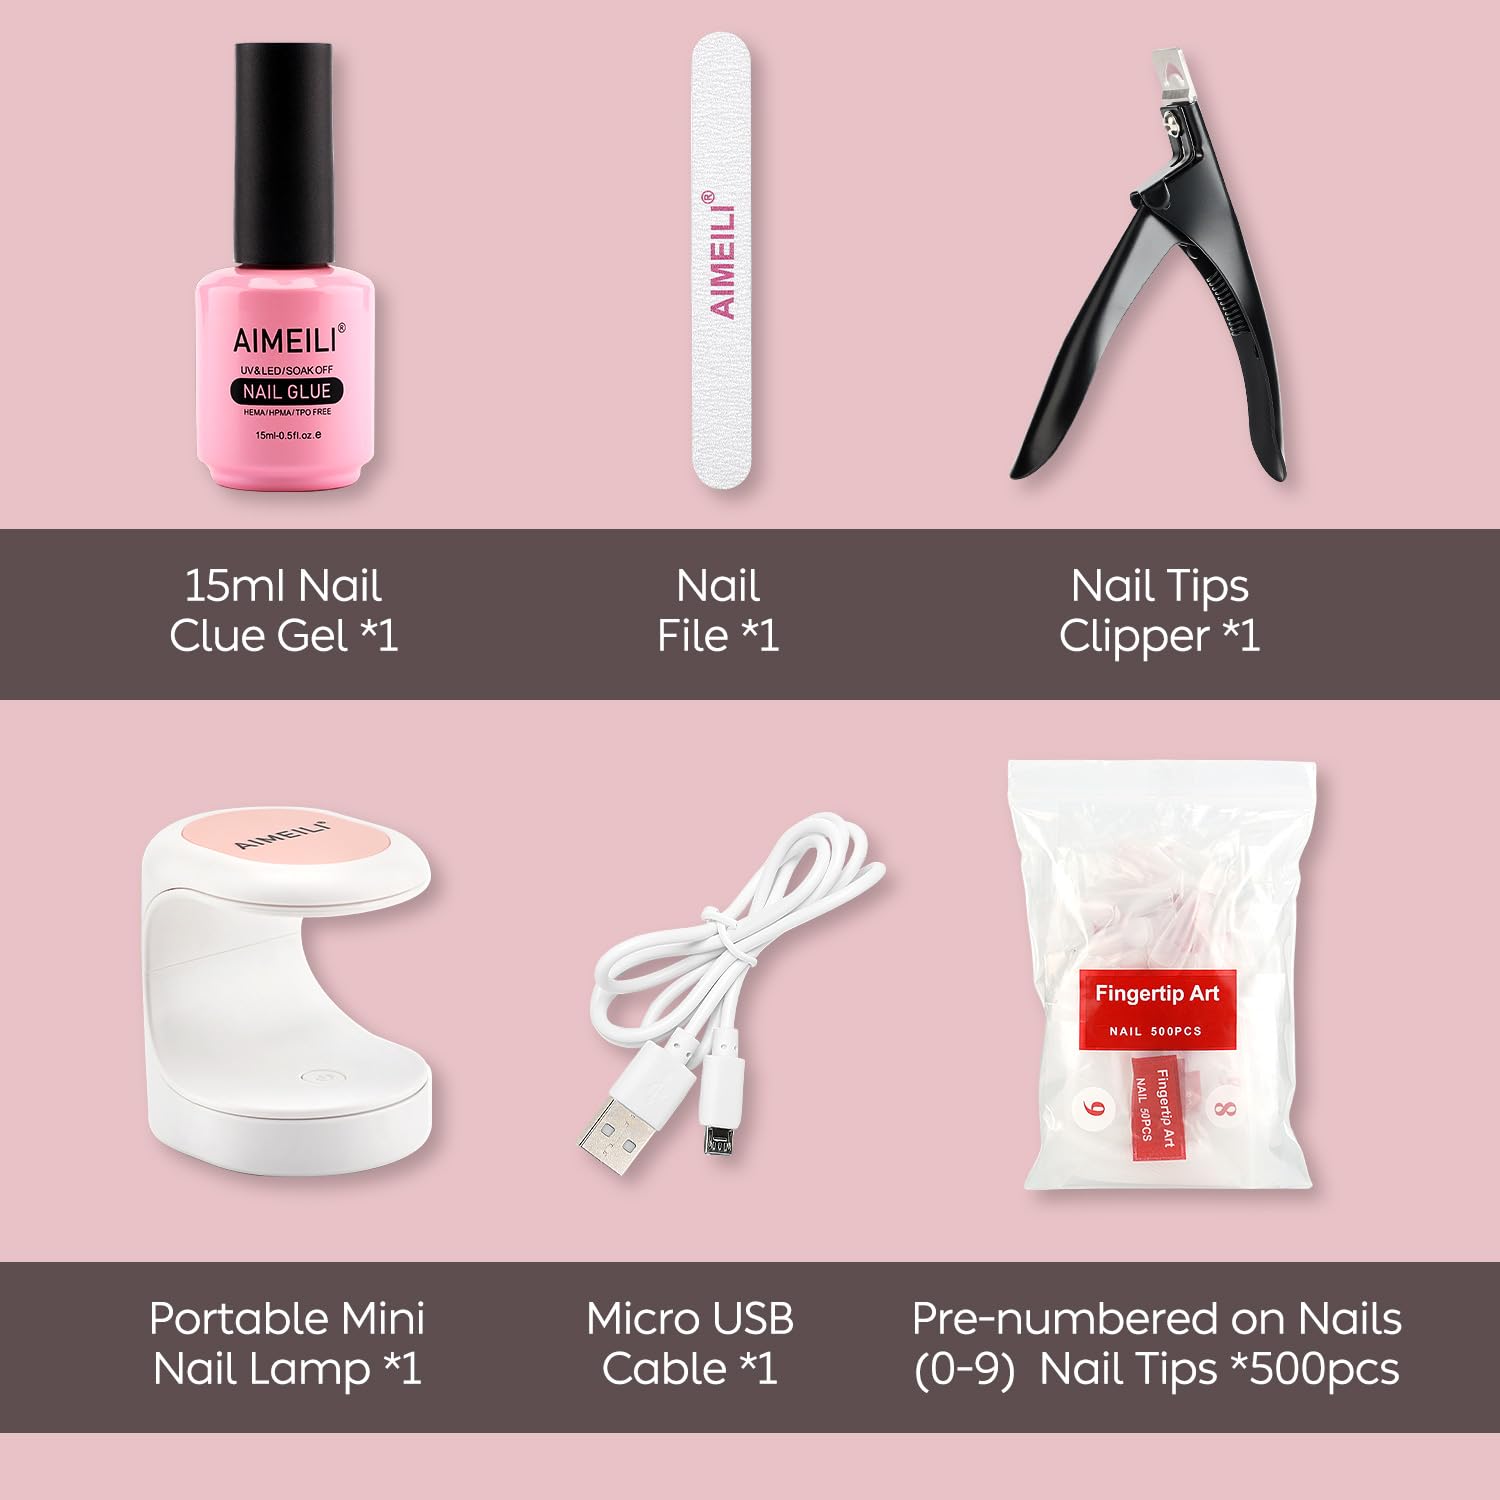 Nail Tips and Glue Kits